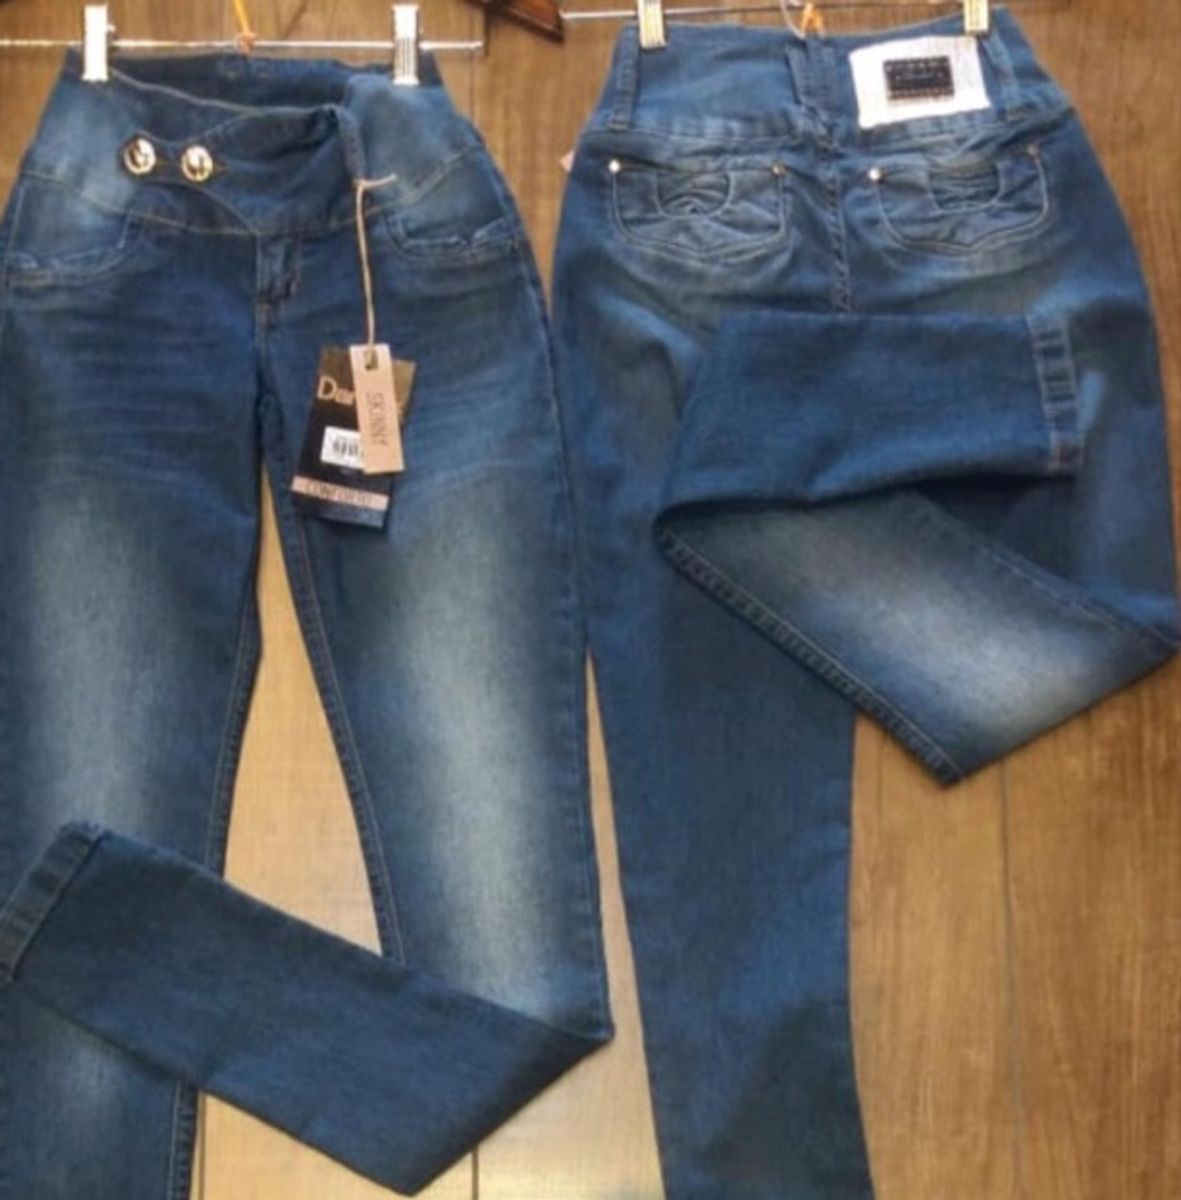 darlook jeans preço